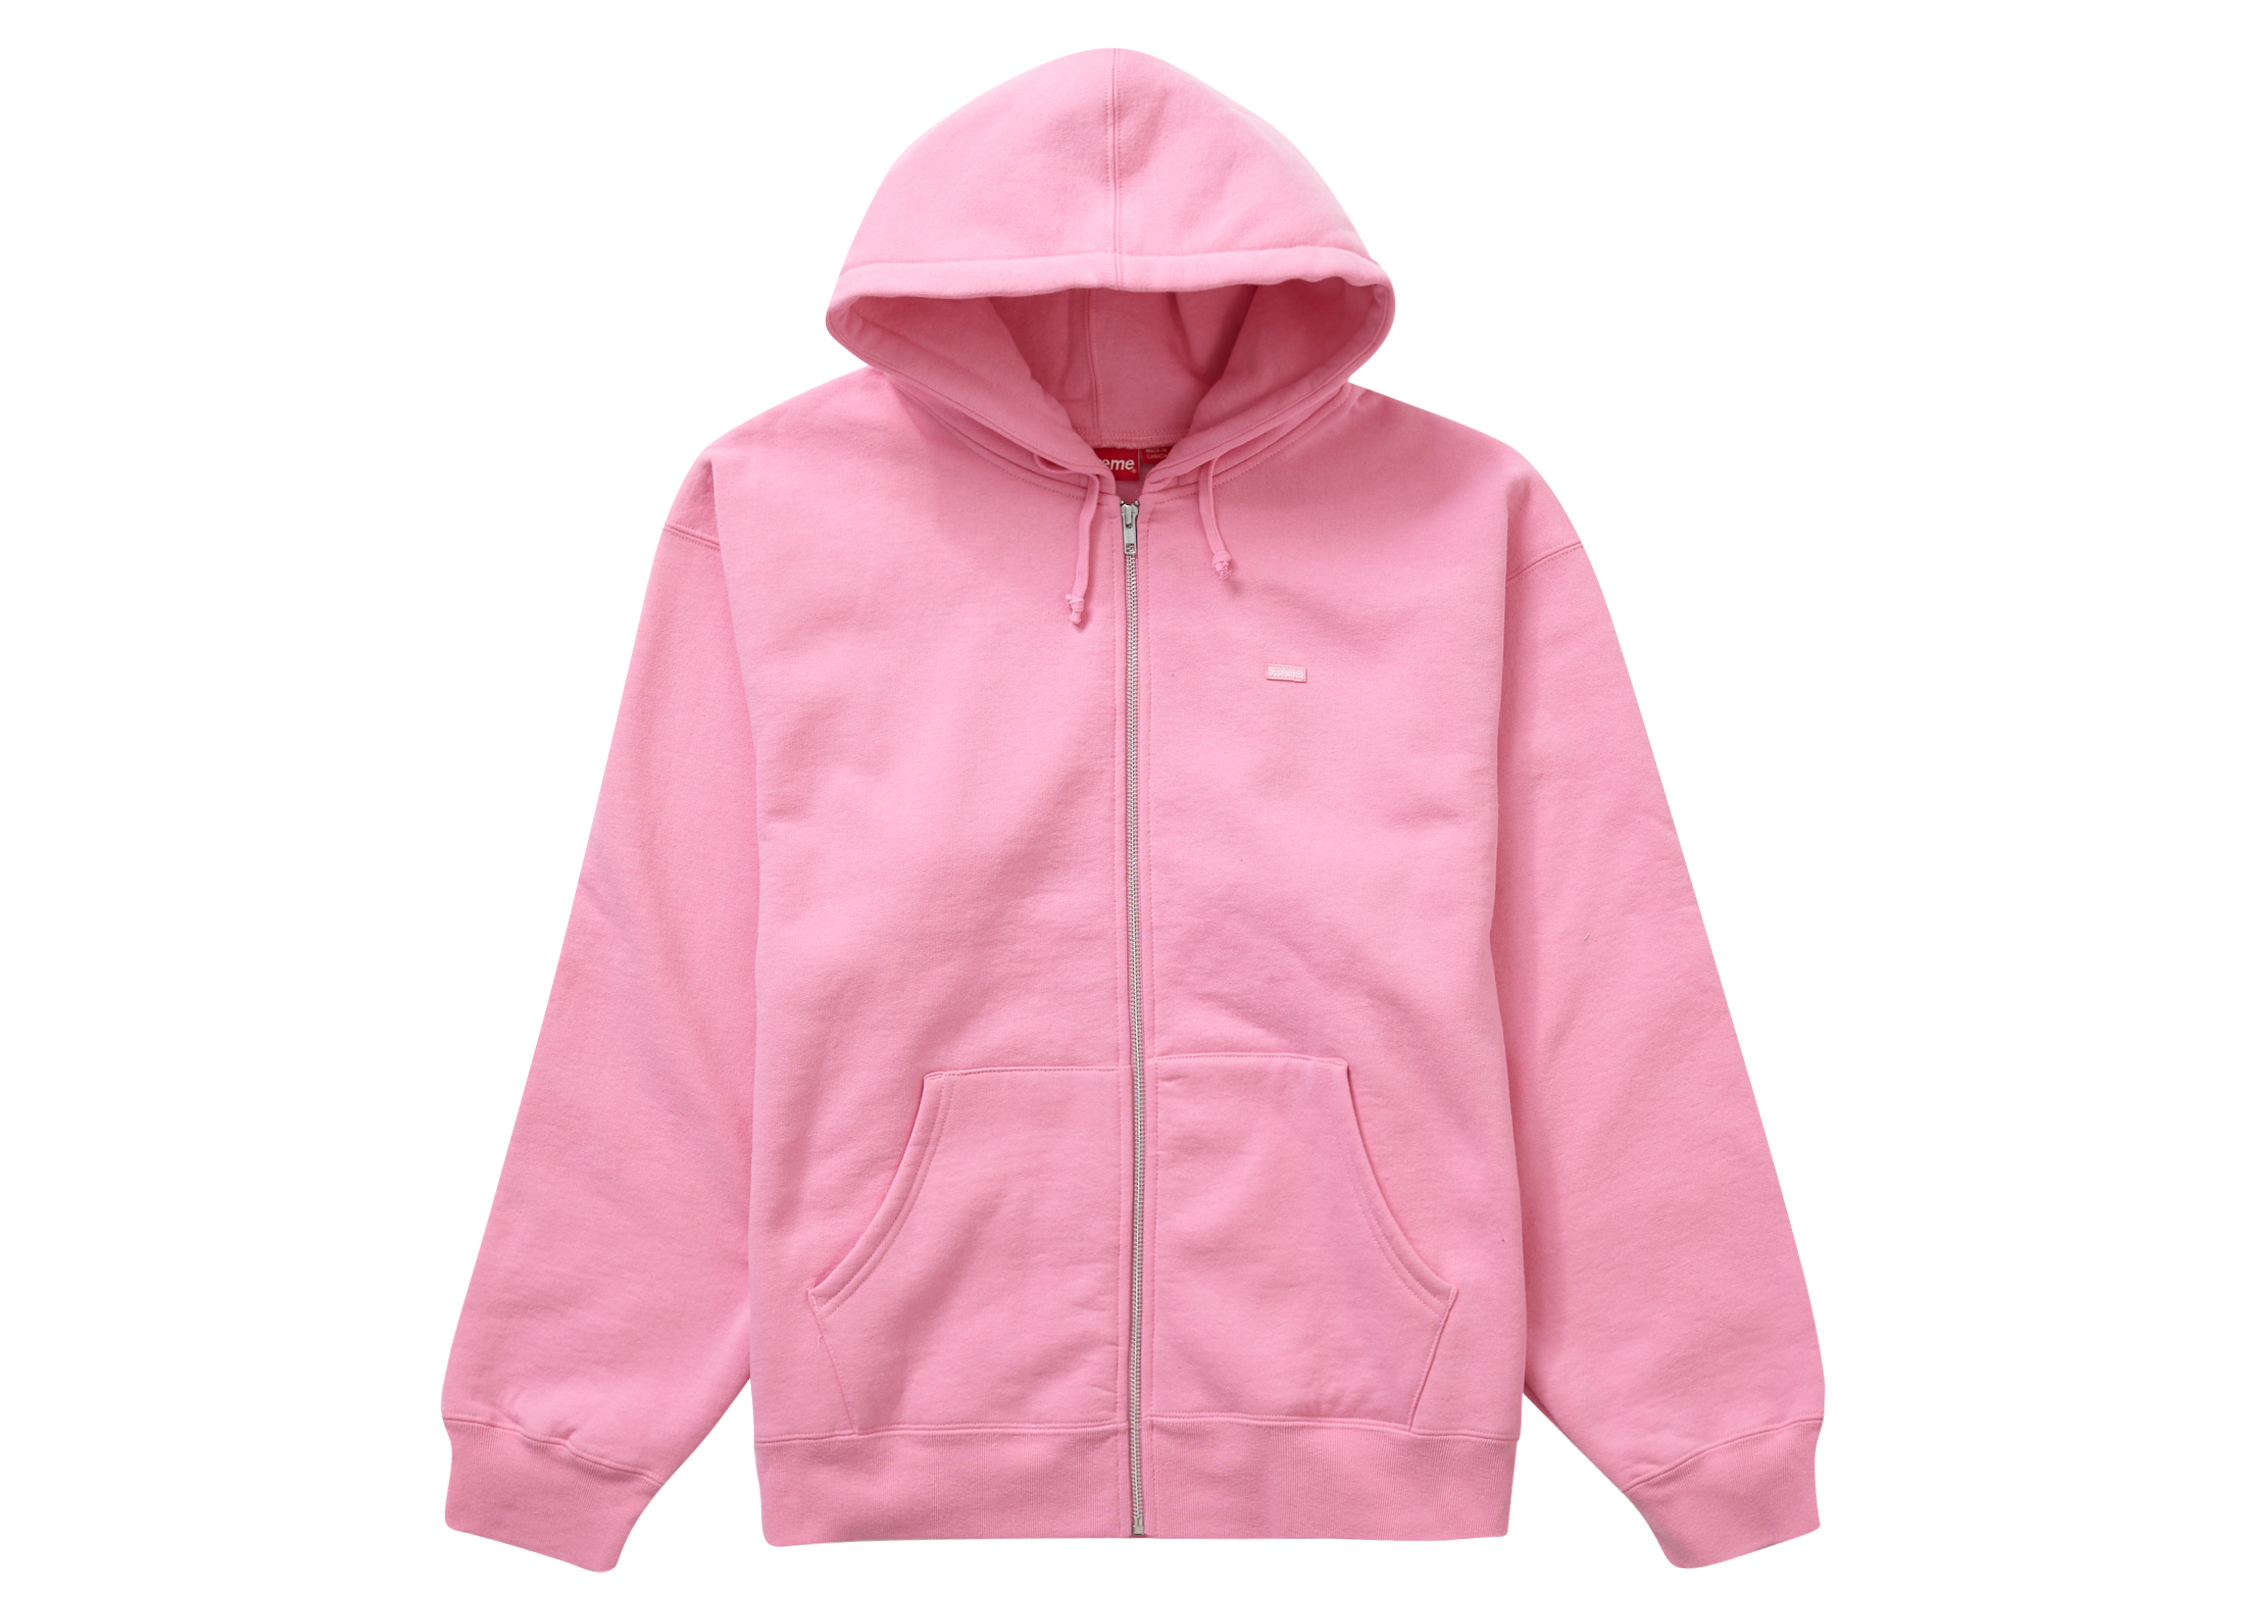 17,640円Supreme Small Box Hooded Light Pink